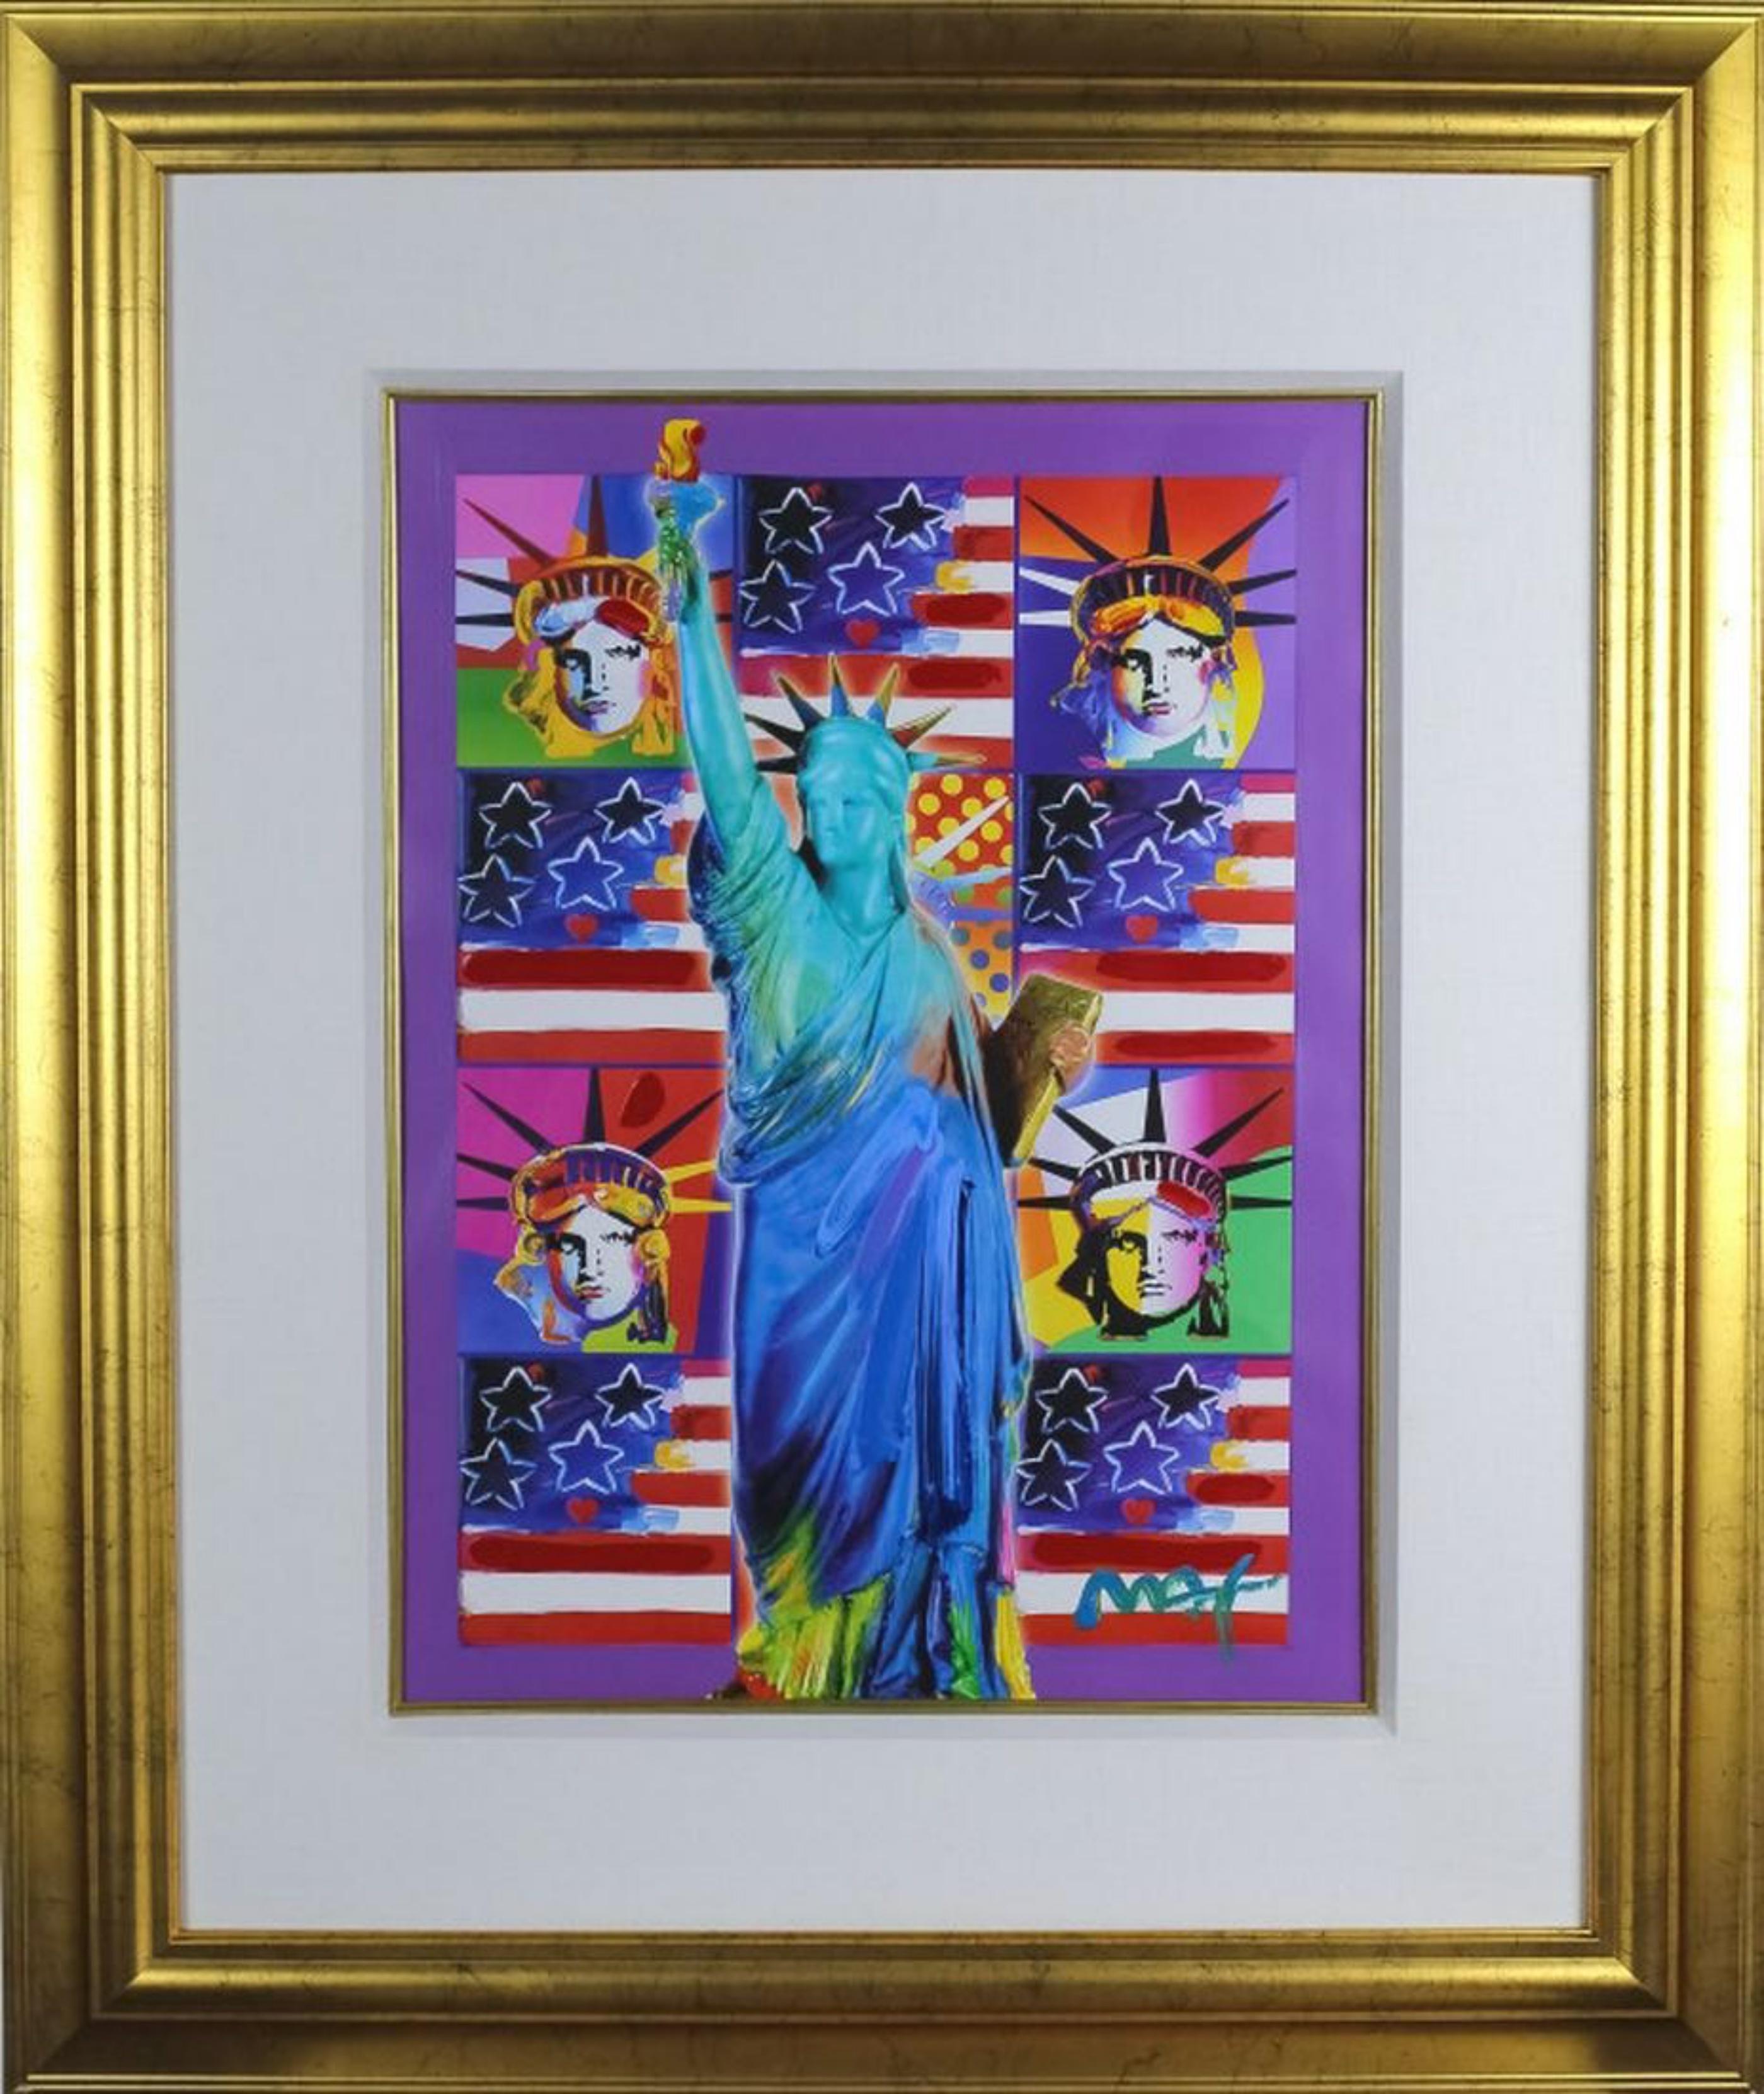 United We Stand: Vier Freiheitsstatuen mit blauem, einzigartigem, signiertem, gerahmtem Gemälde – Painting von Peter Max